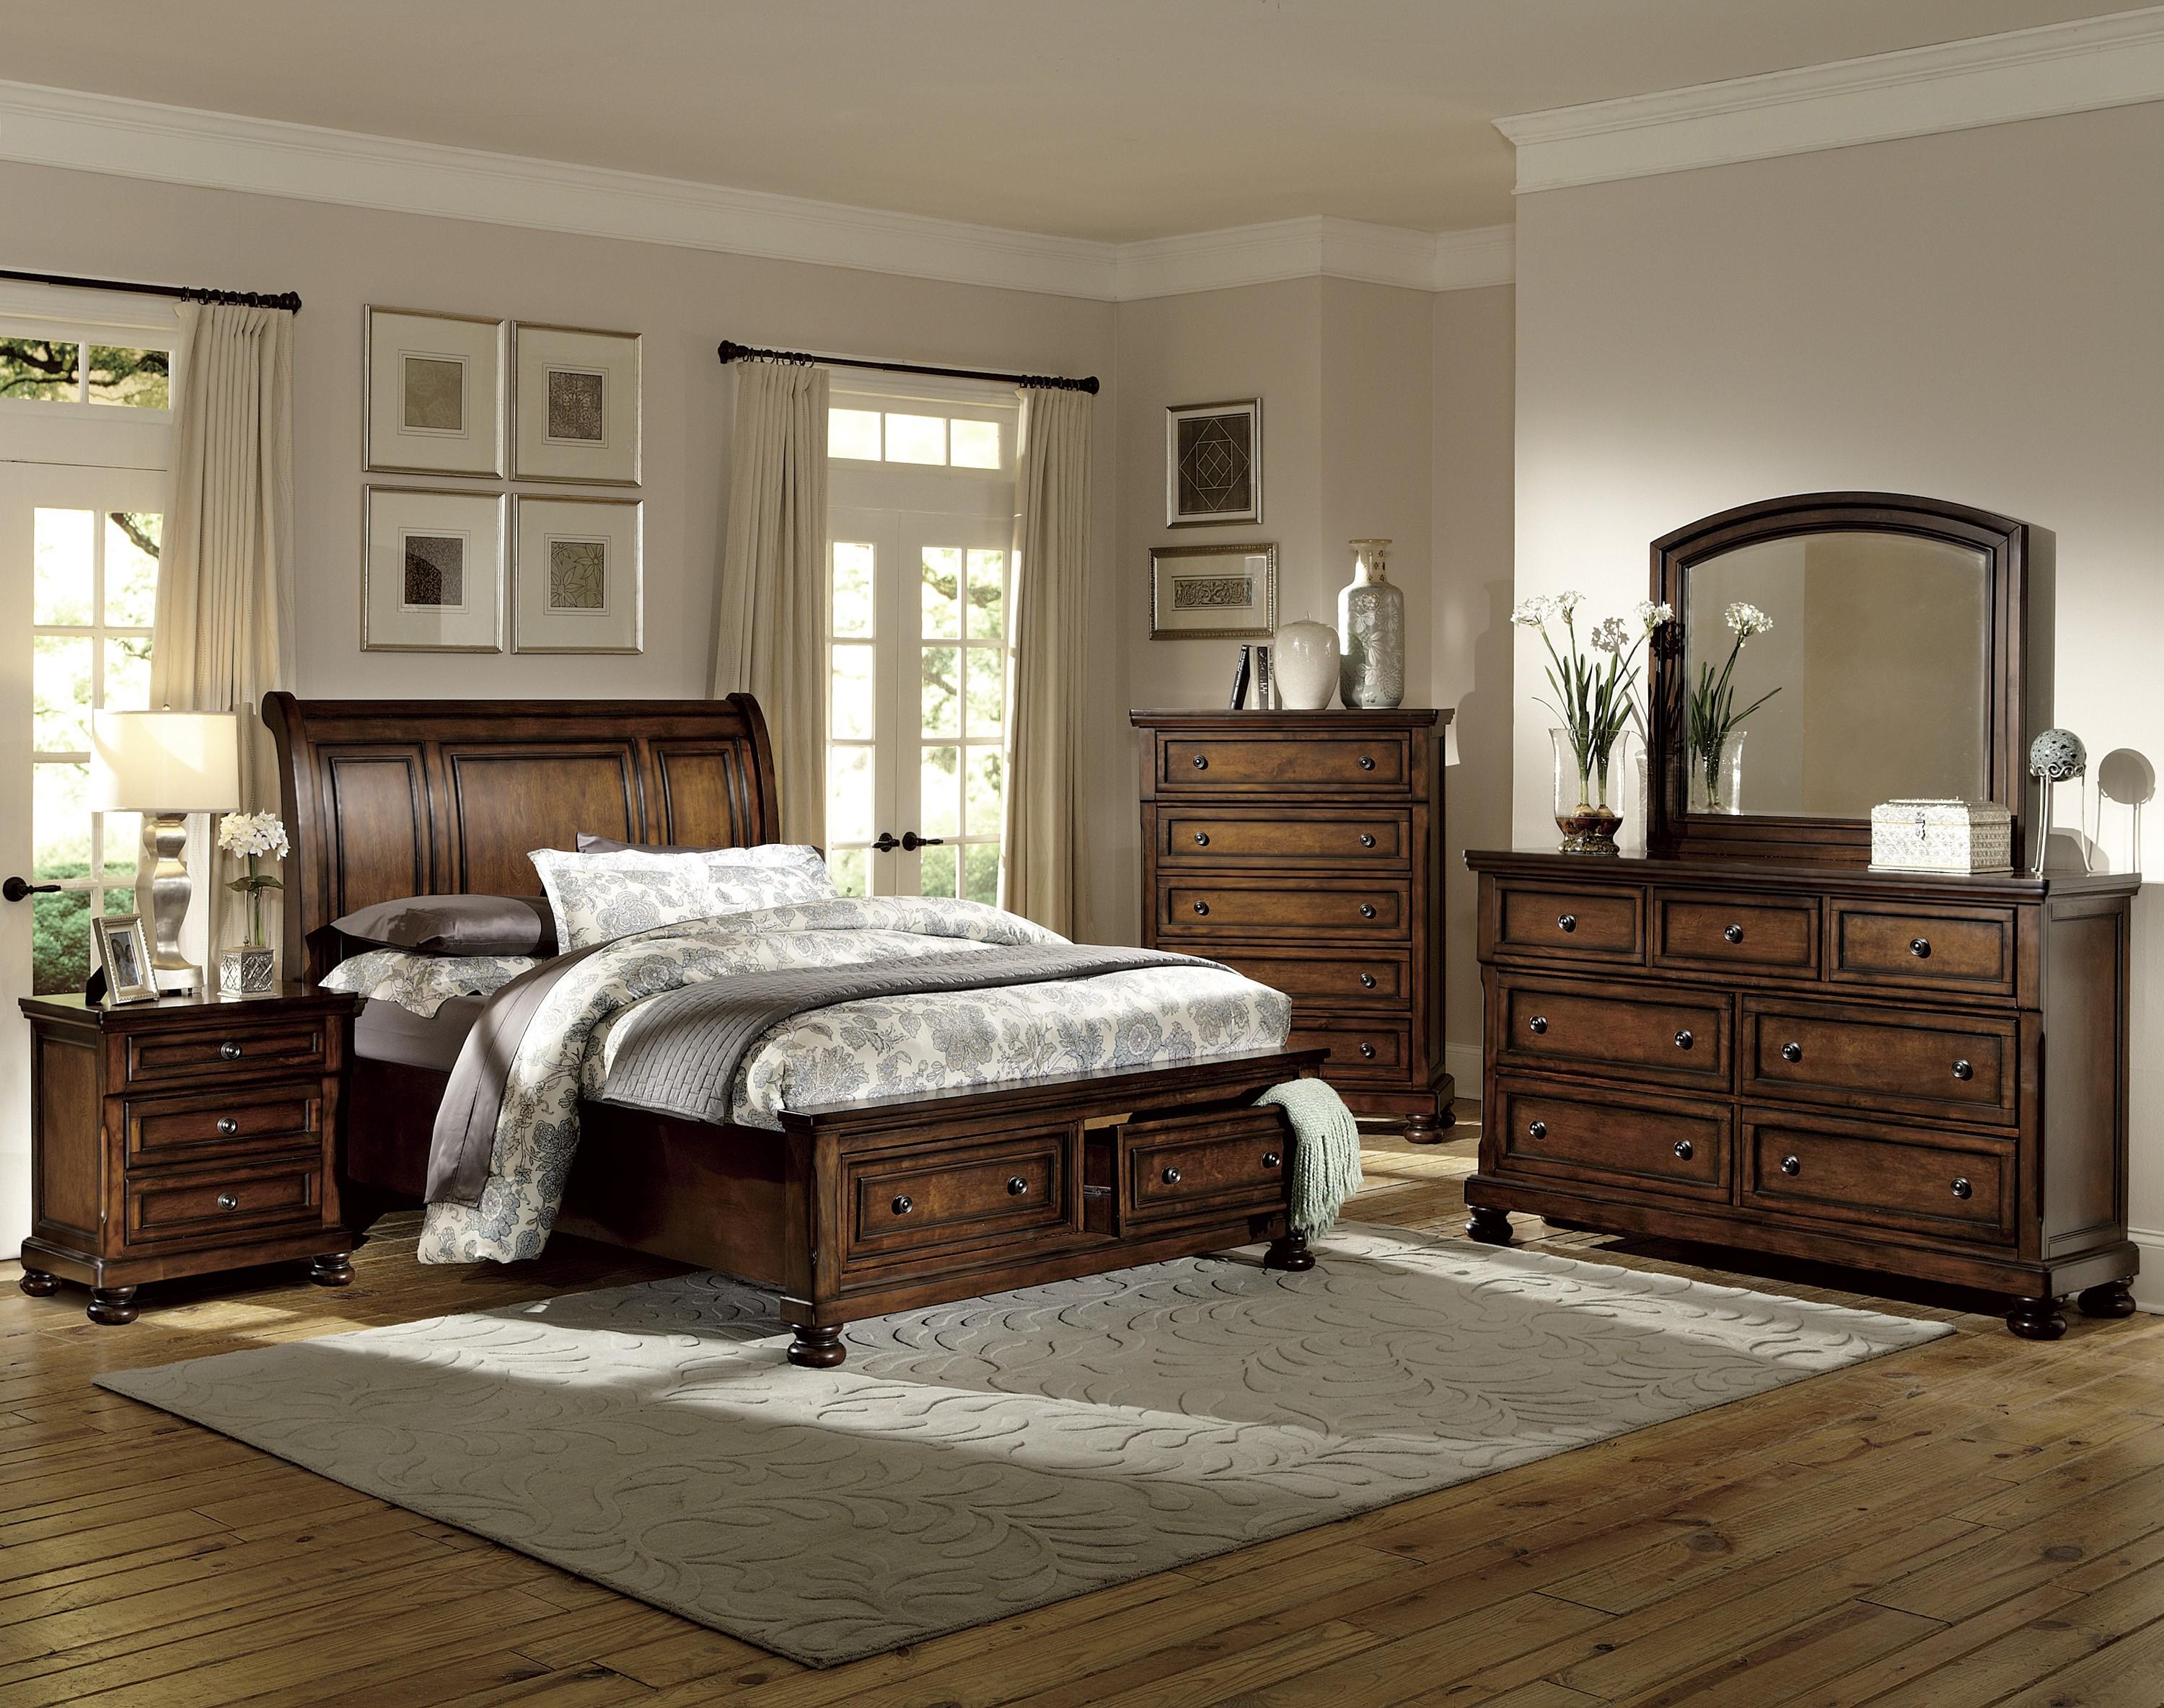 

    
Traditional Brown Cherry Wood King Bedroom Set 6pcs Homelegance 2159K-1EK* Cumberland
